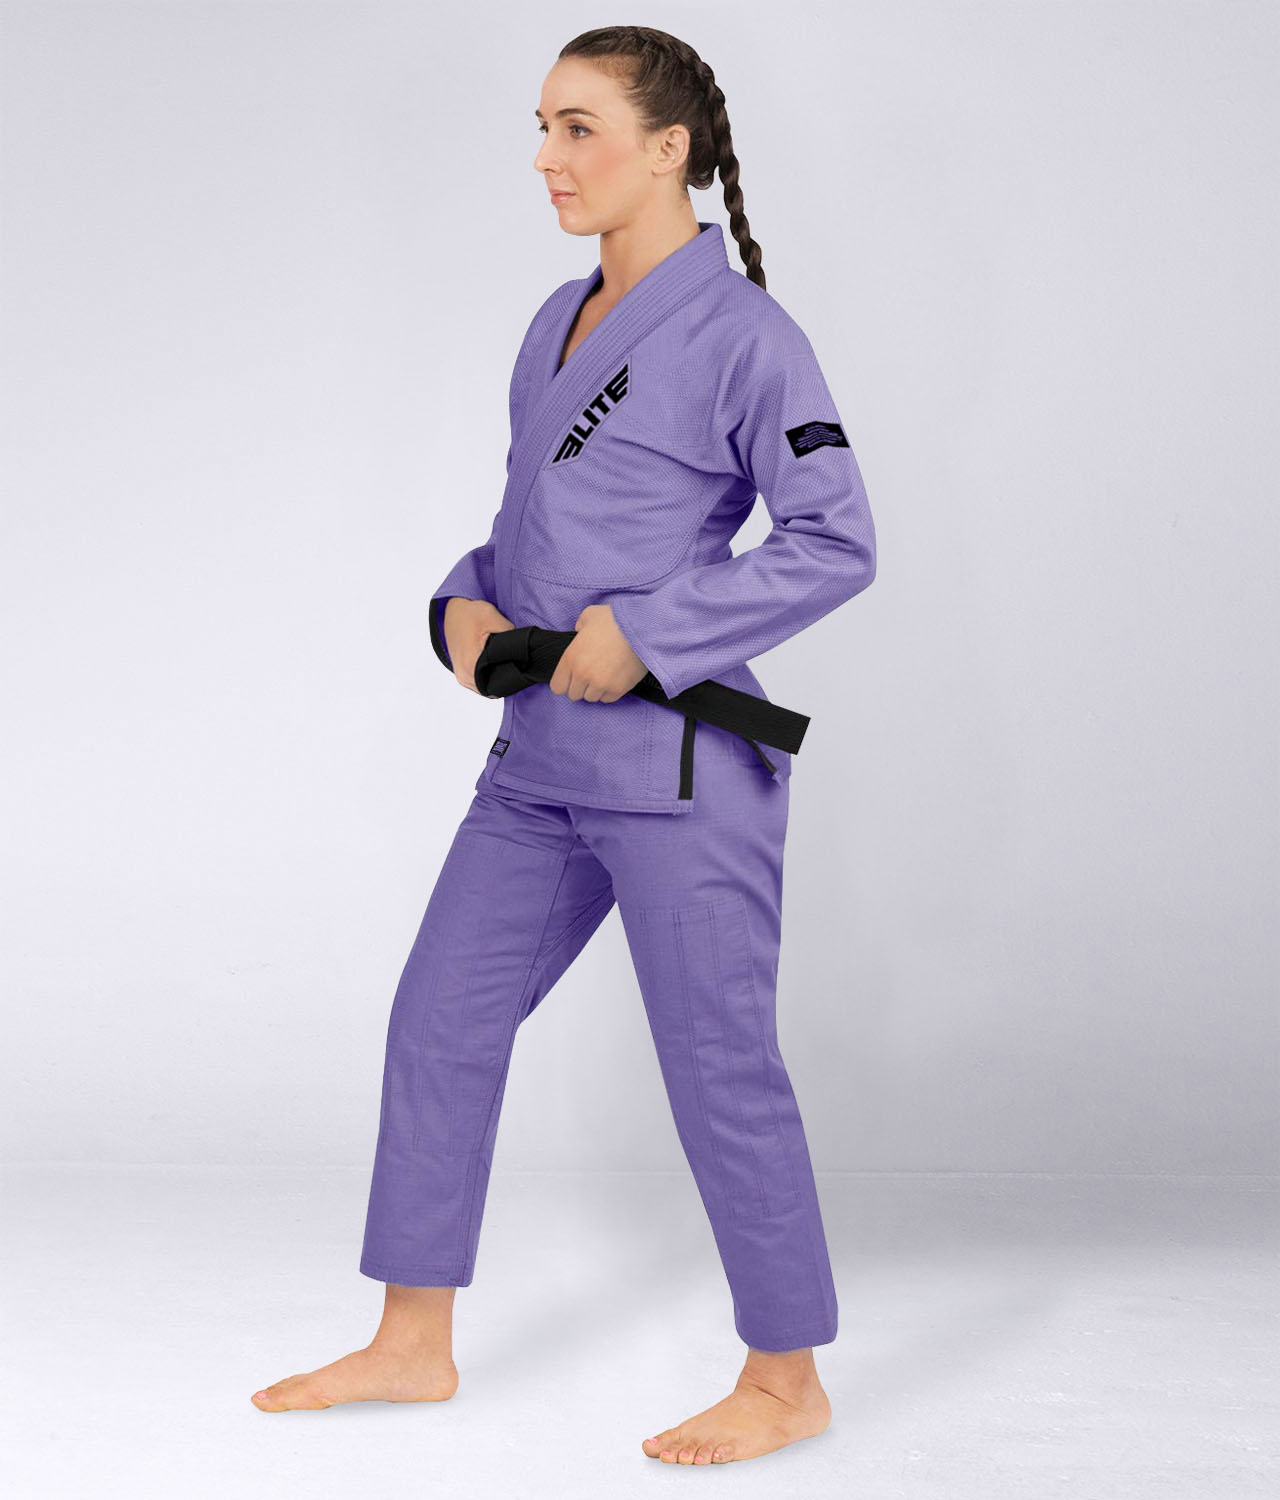 Women's Core Purple Brazilian Jiu Jitsu BJJ Gi